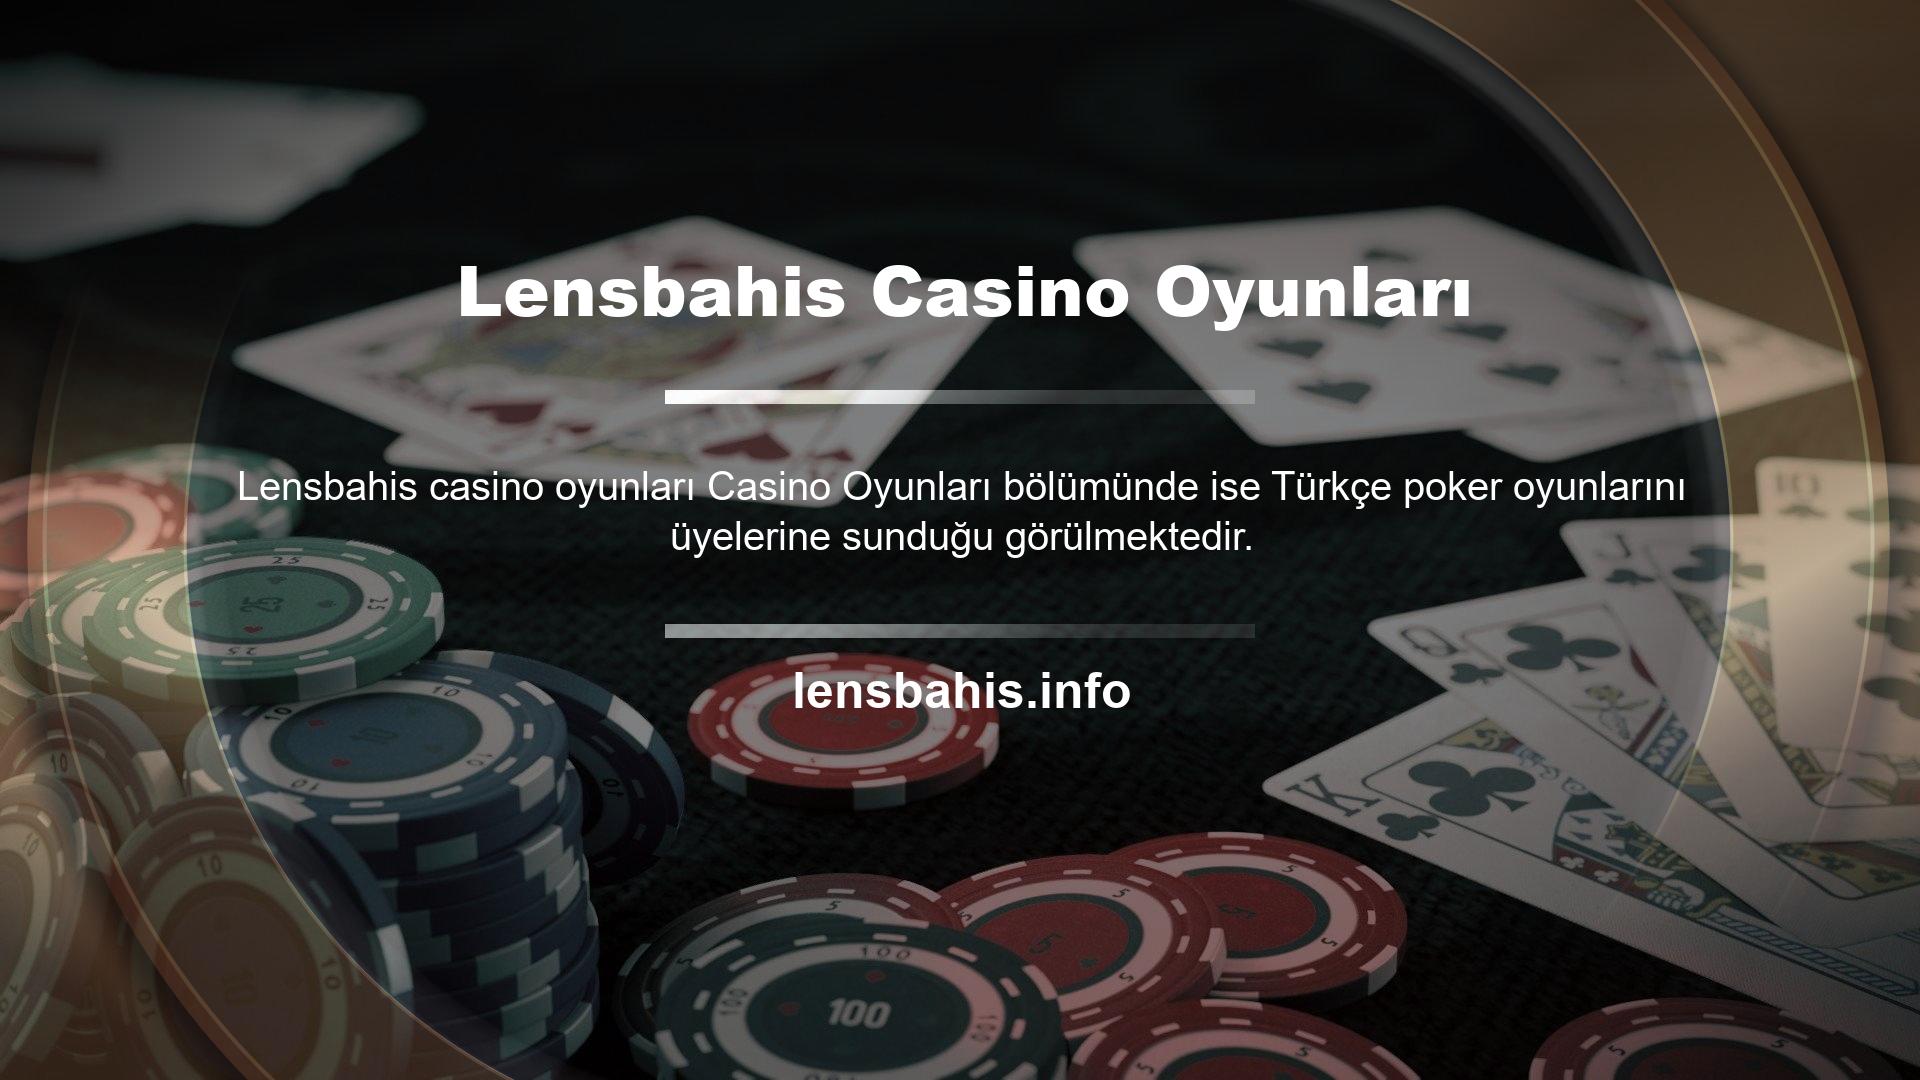 Her üye Lensbahis Turkey Poker oynayarak çok para kazanabilir